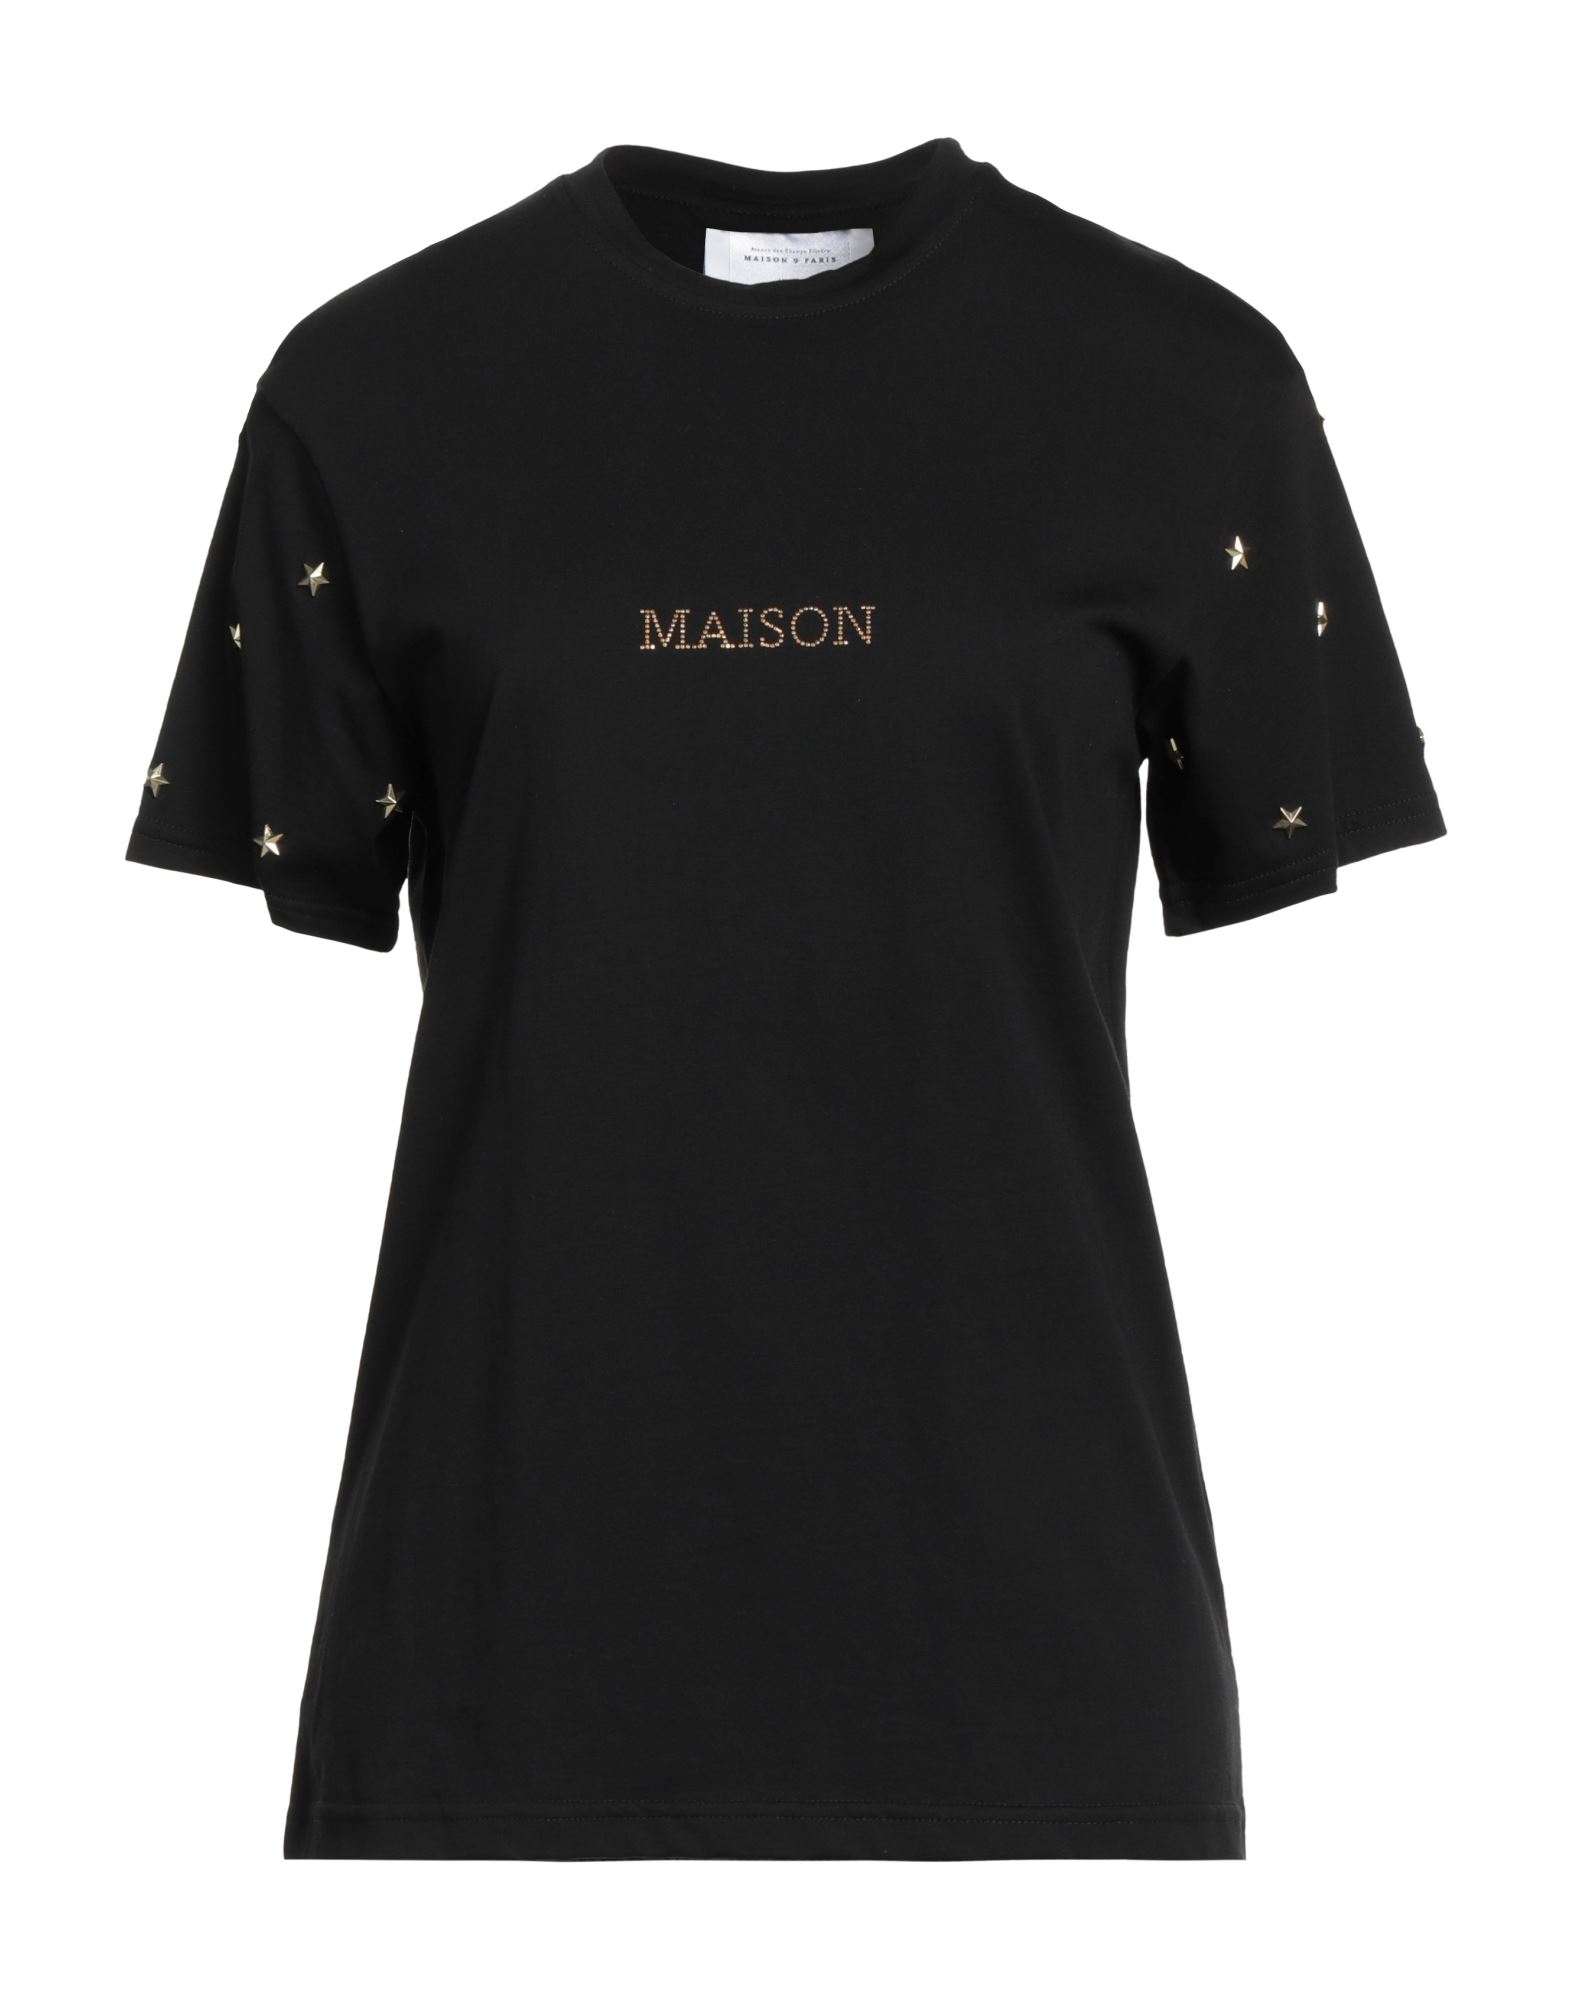 MAISON 9 Paris T-shirts